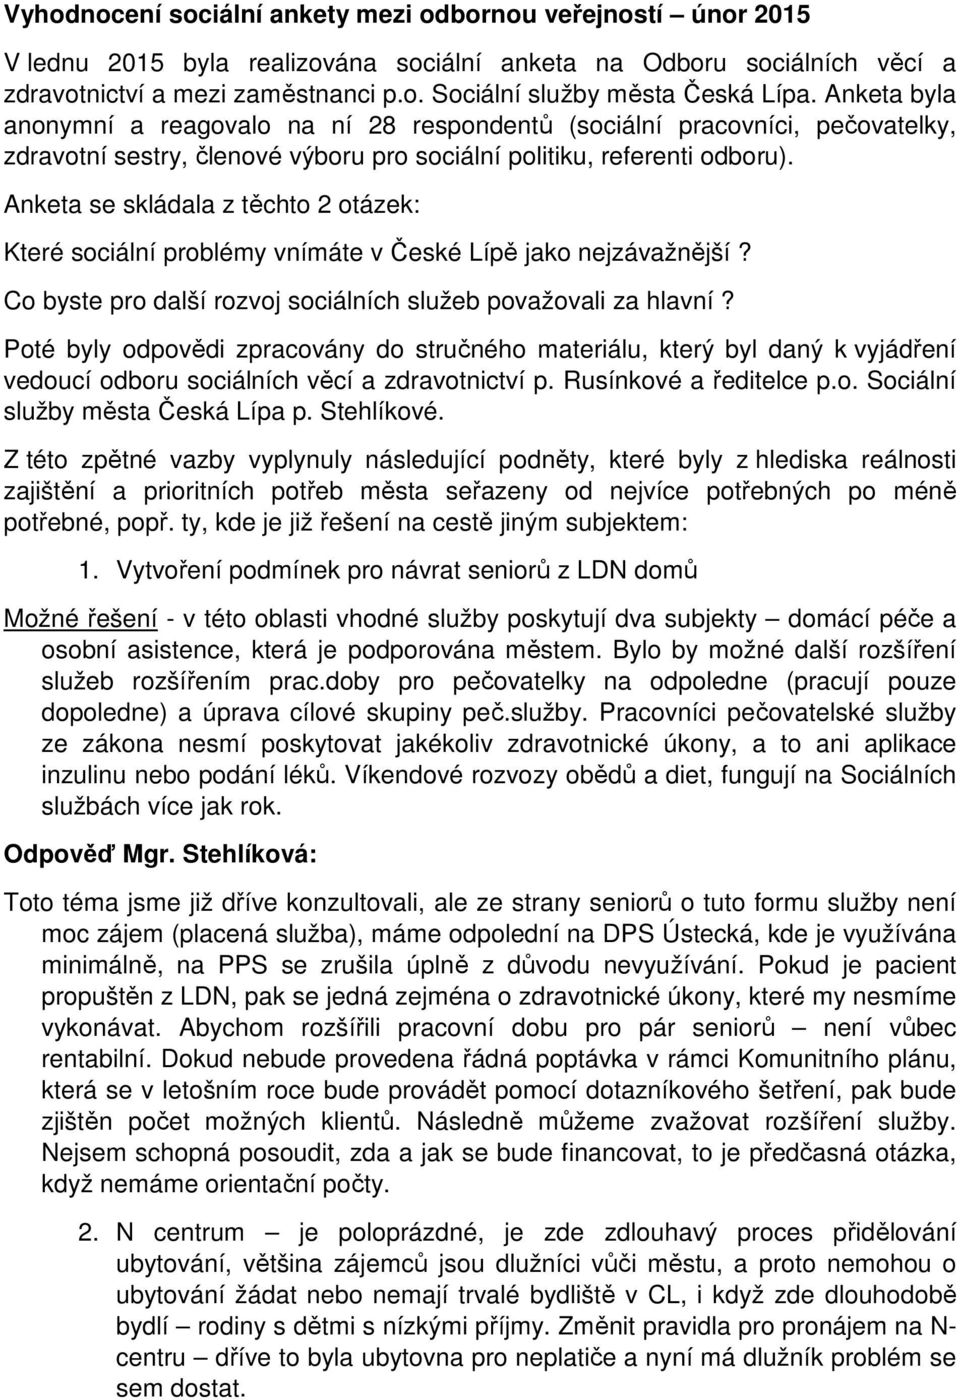 Anketa se skládala z těchto 2 otázek: Které sociální problémy vnímáte v České Lípě jako nejzávažnější? Co byste pro další rozvoj sociálních služeb považovali za hlavní?